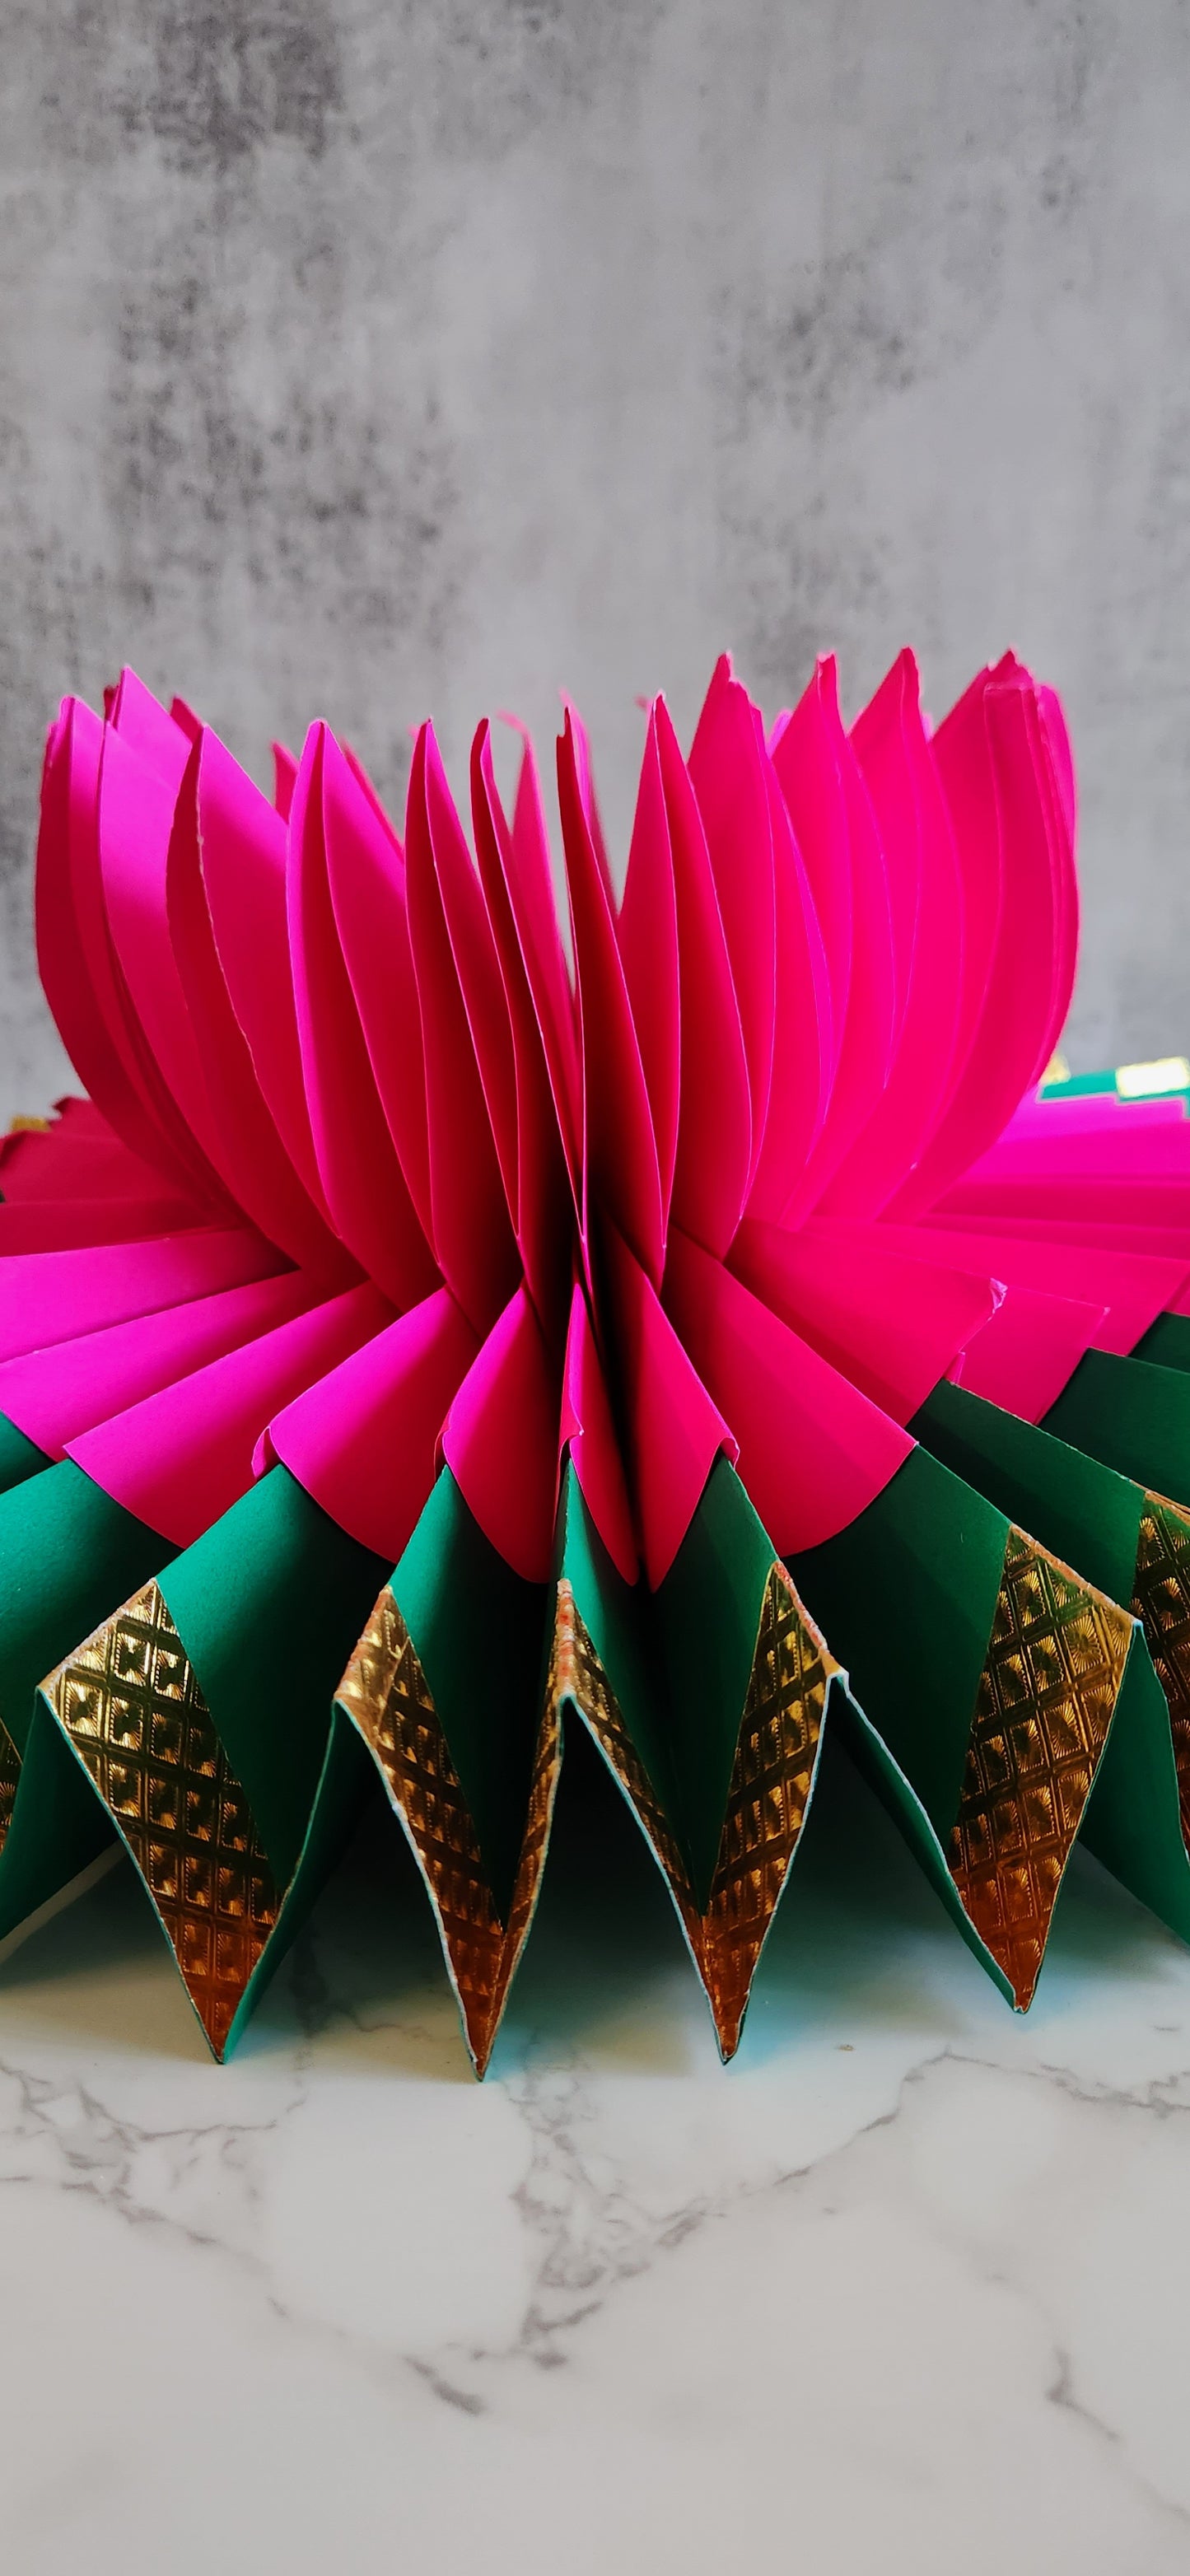 Paper Flower Asan - Pink - 22"